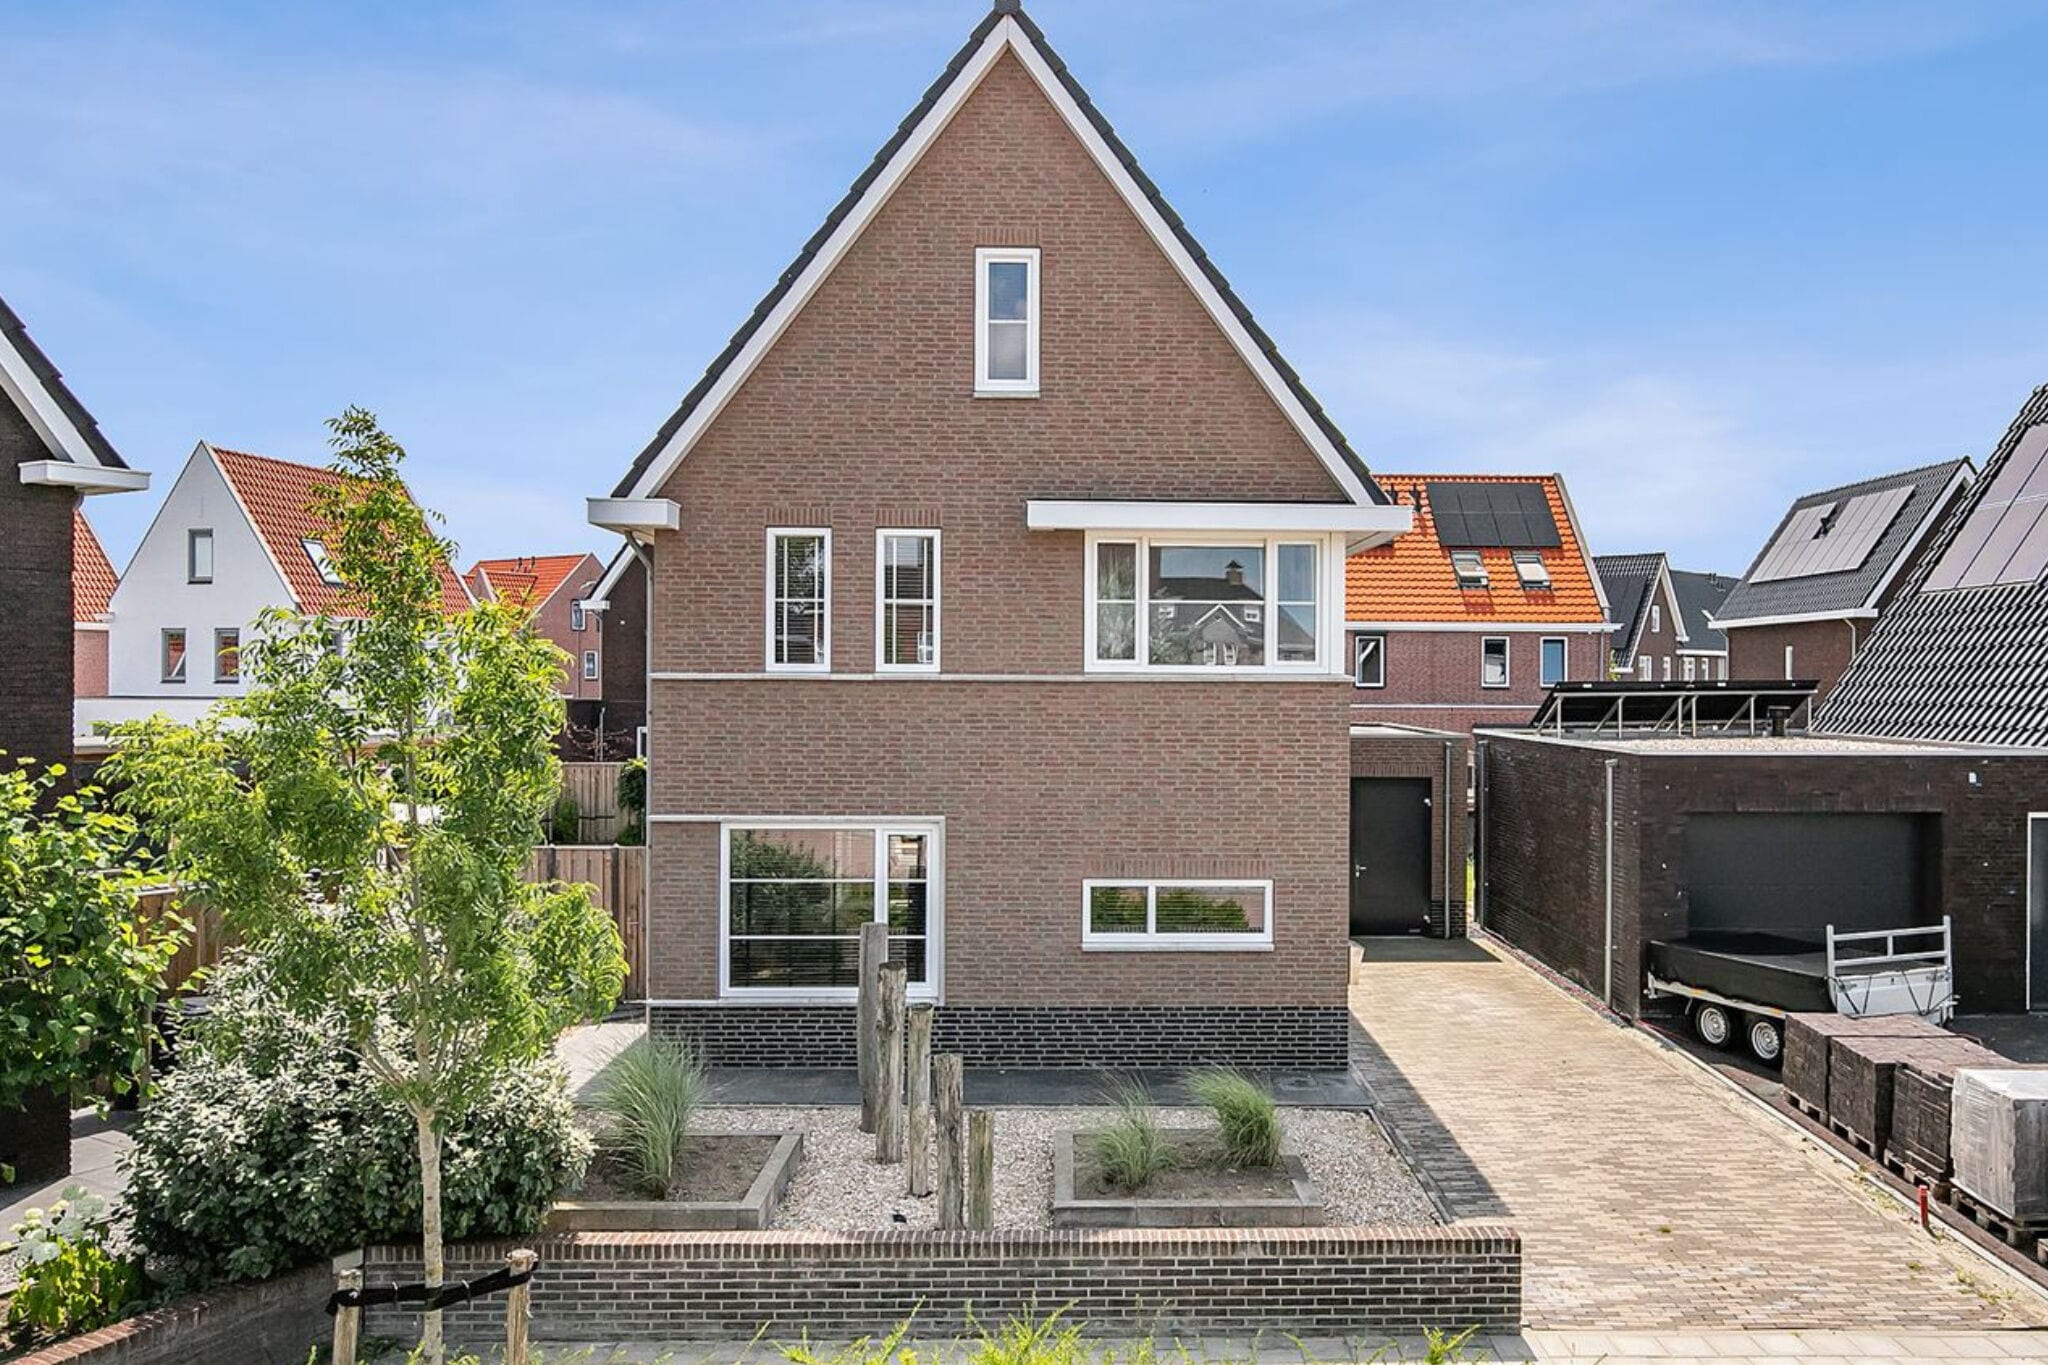 Tasteful holiday home in Middelburg with garden